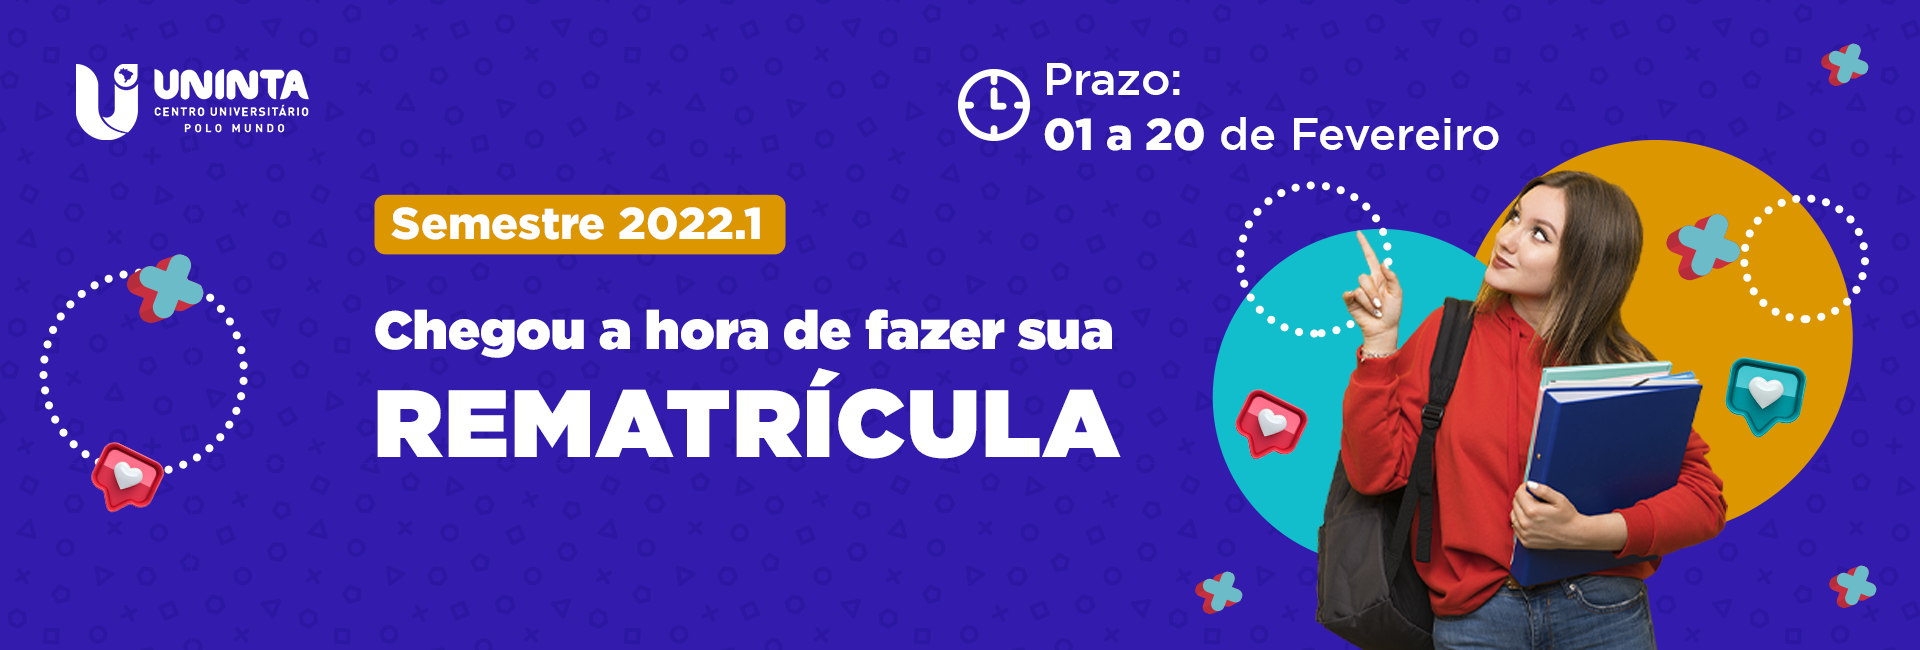 Rematrícula-2022.1-UNINTA-Polo-Mundo-banner